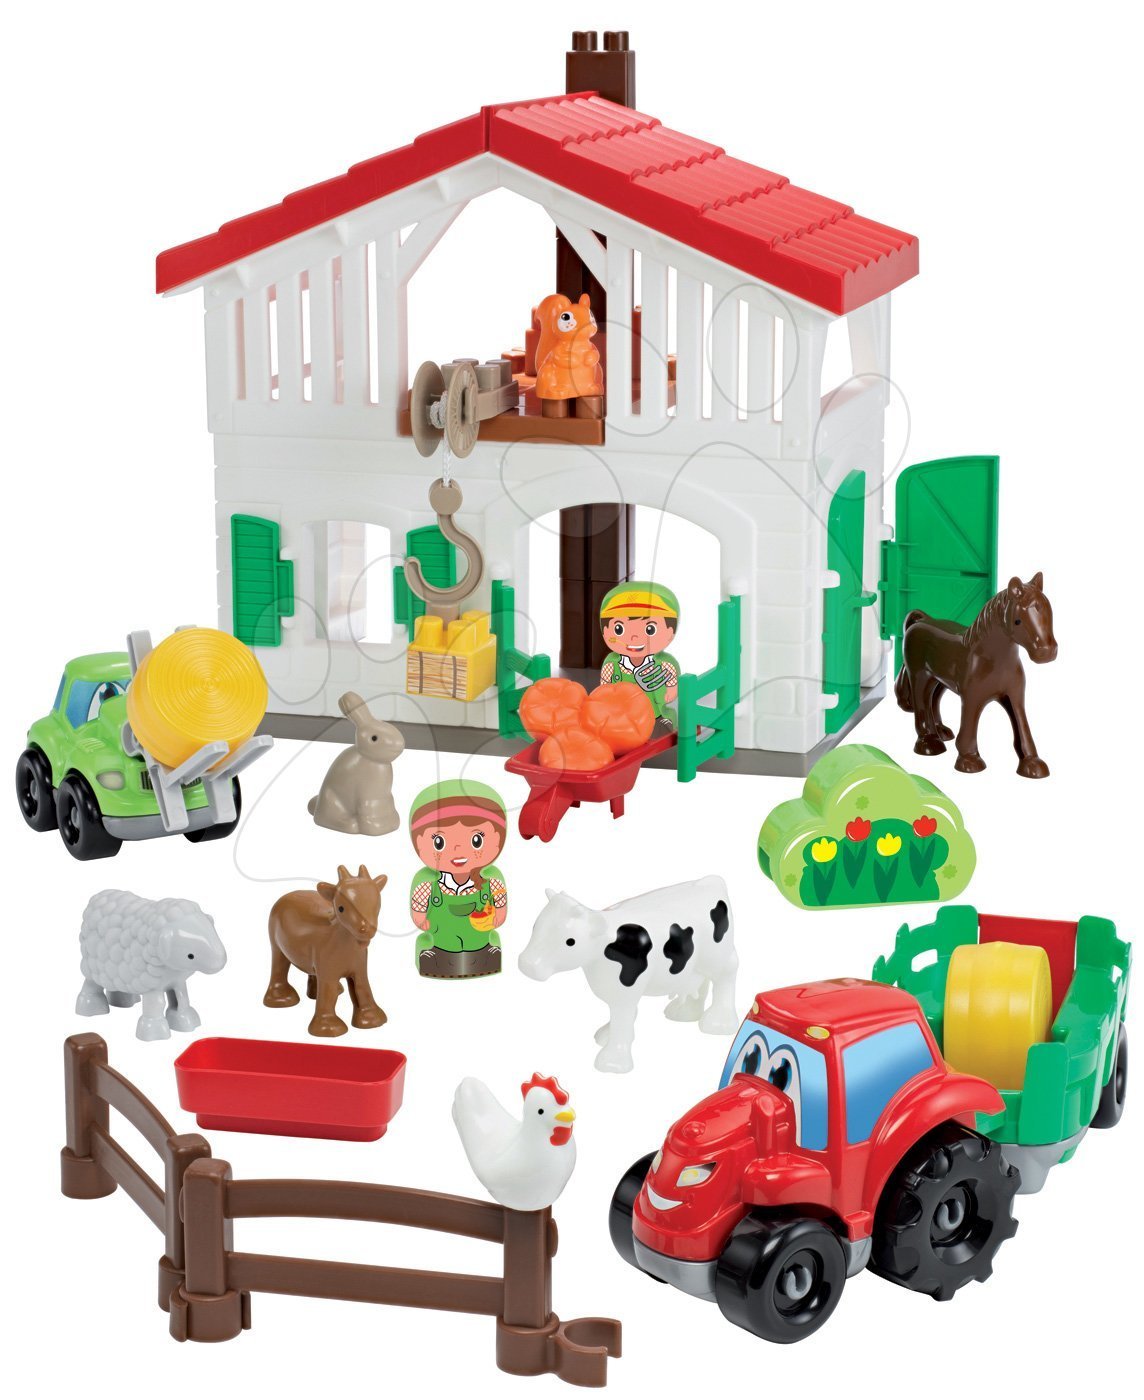 Écoiffier stavebnica farma s traktorom Abrick so 7 zvieratkami a 2 farmármi 3021